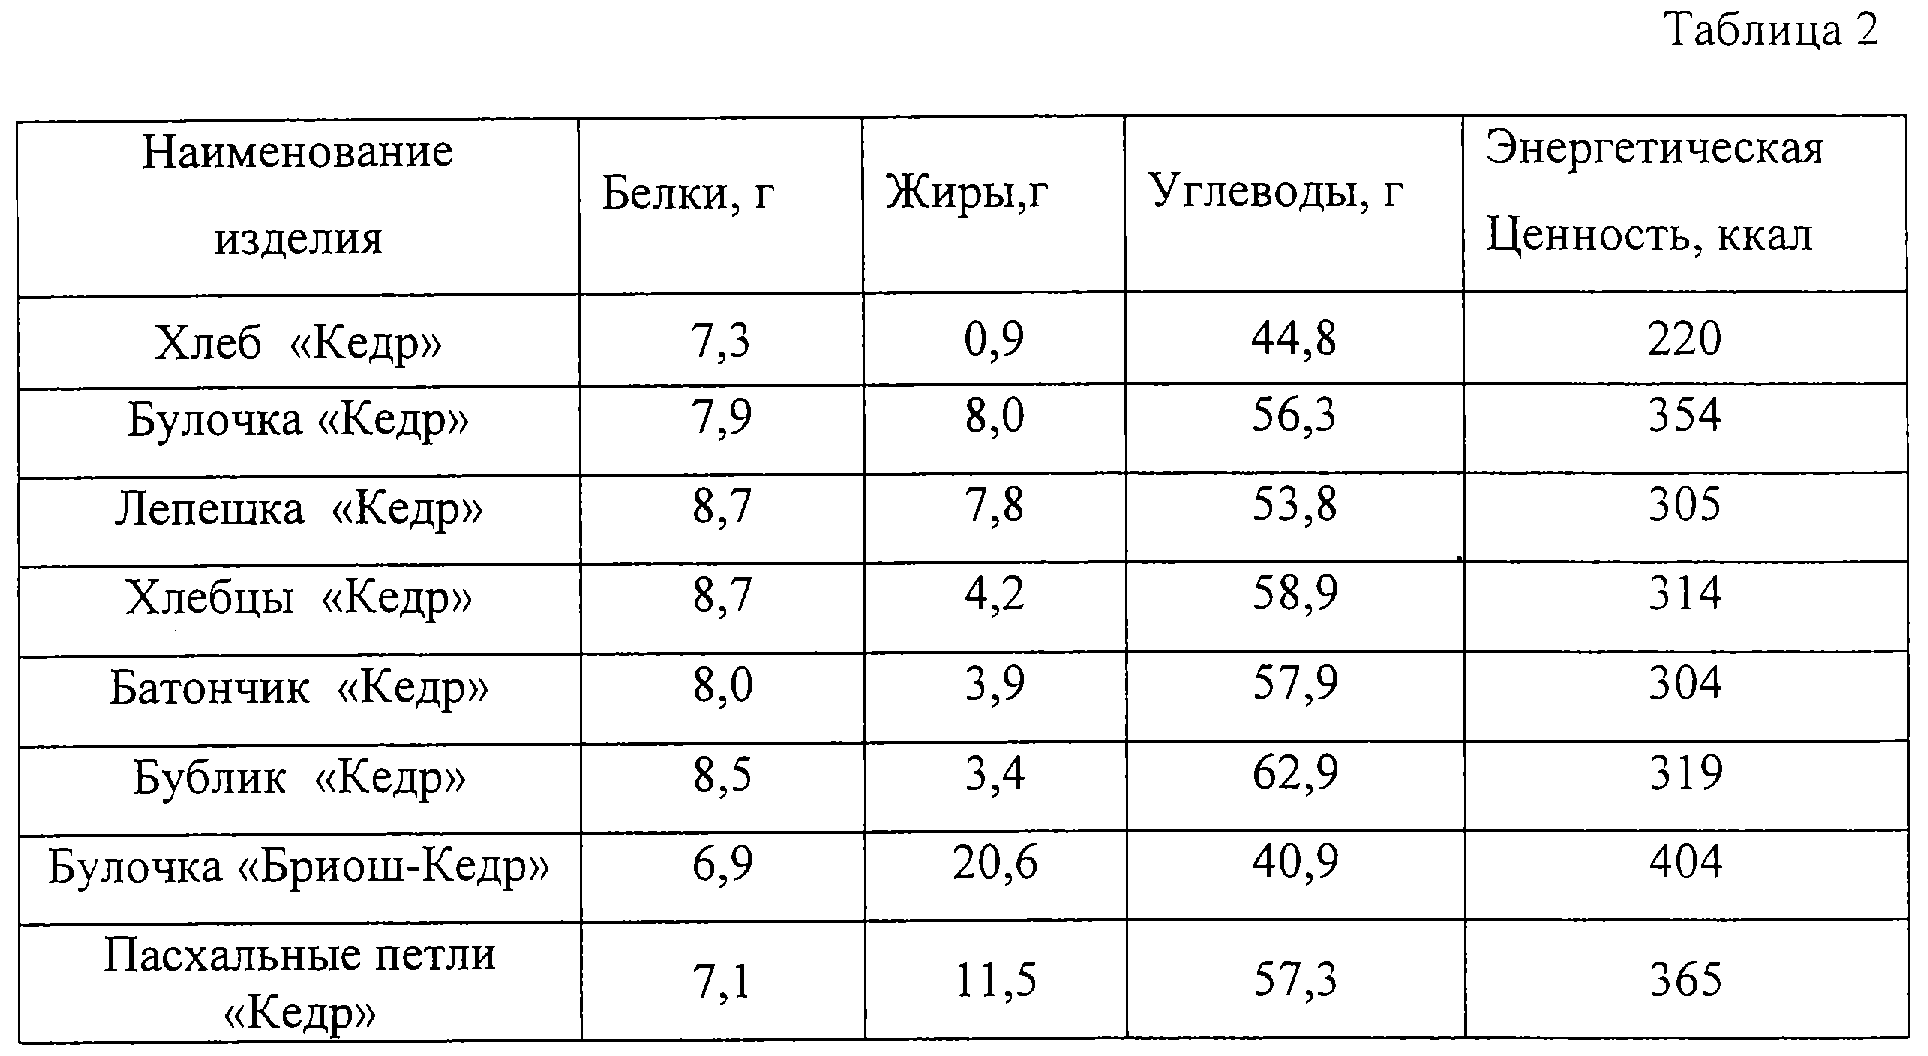 Пищевая ценность хлебобулочных изделий таблица